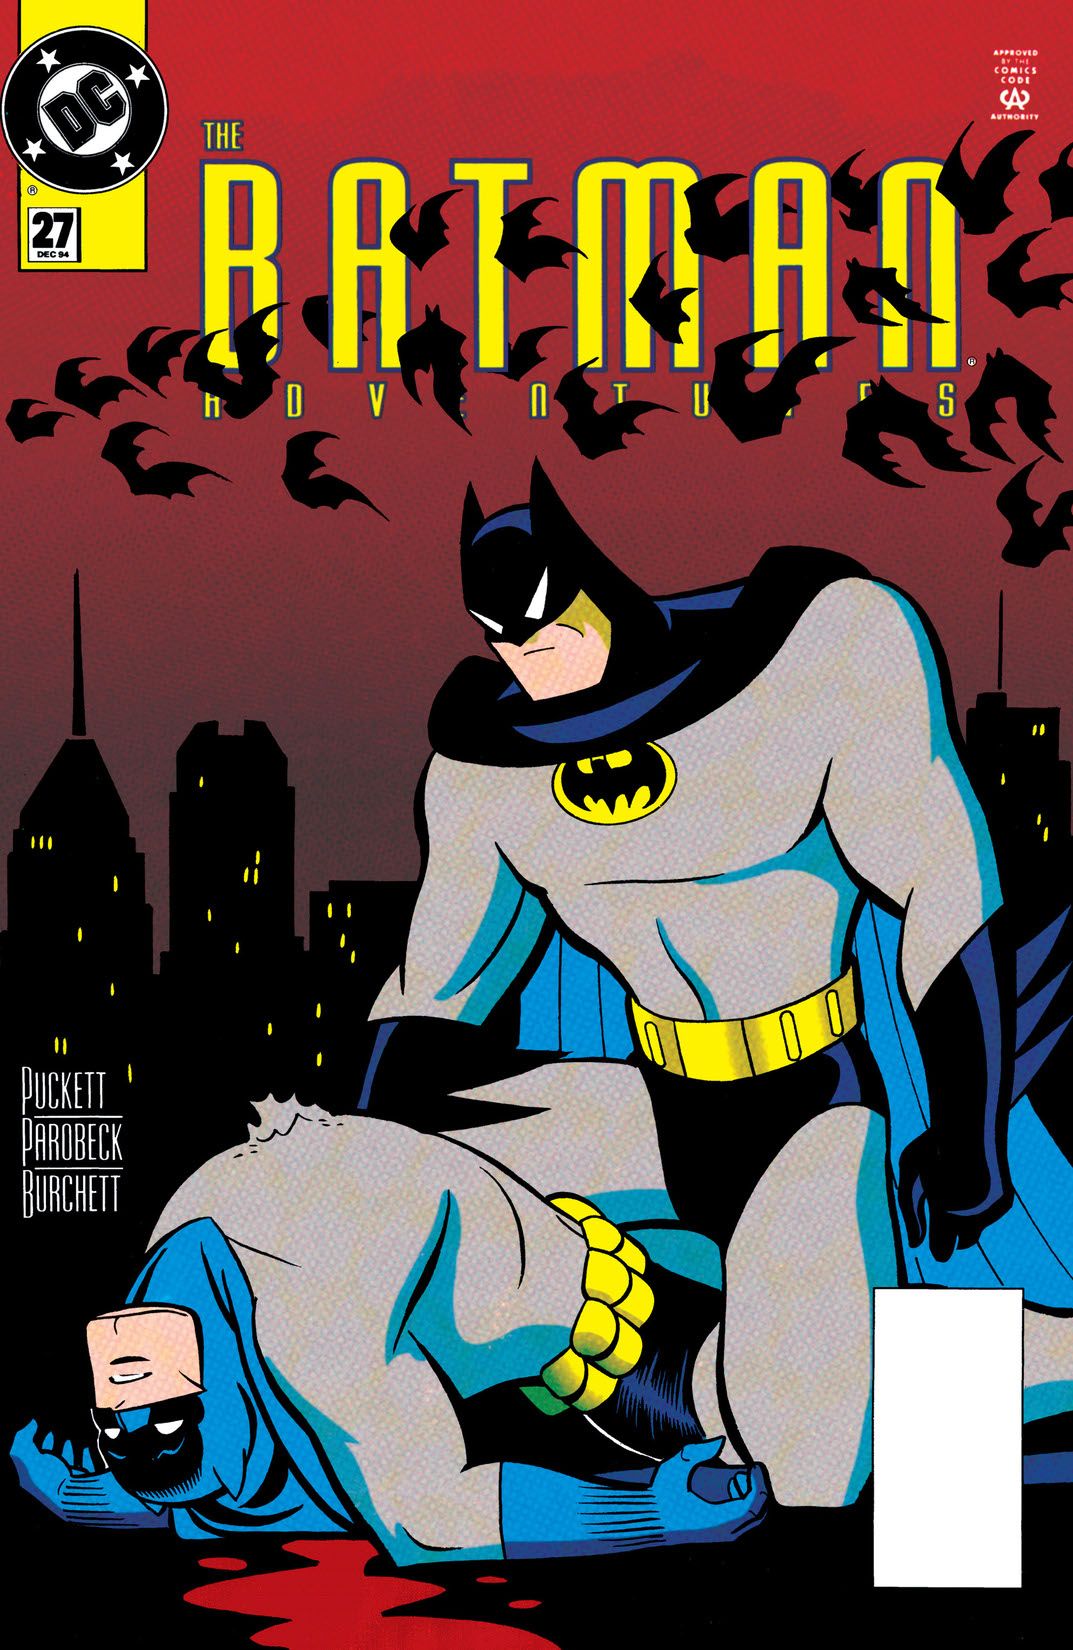 The Batman Adventures #27 preview images